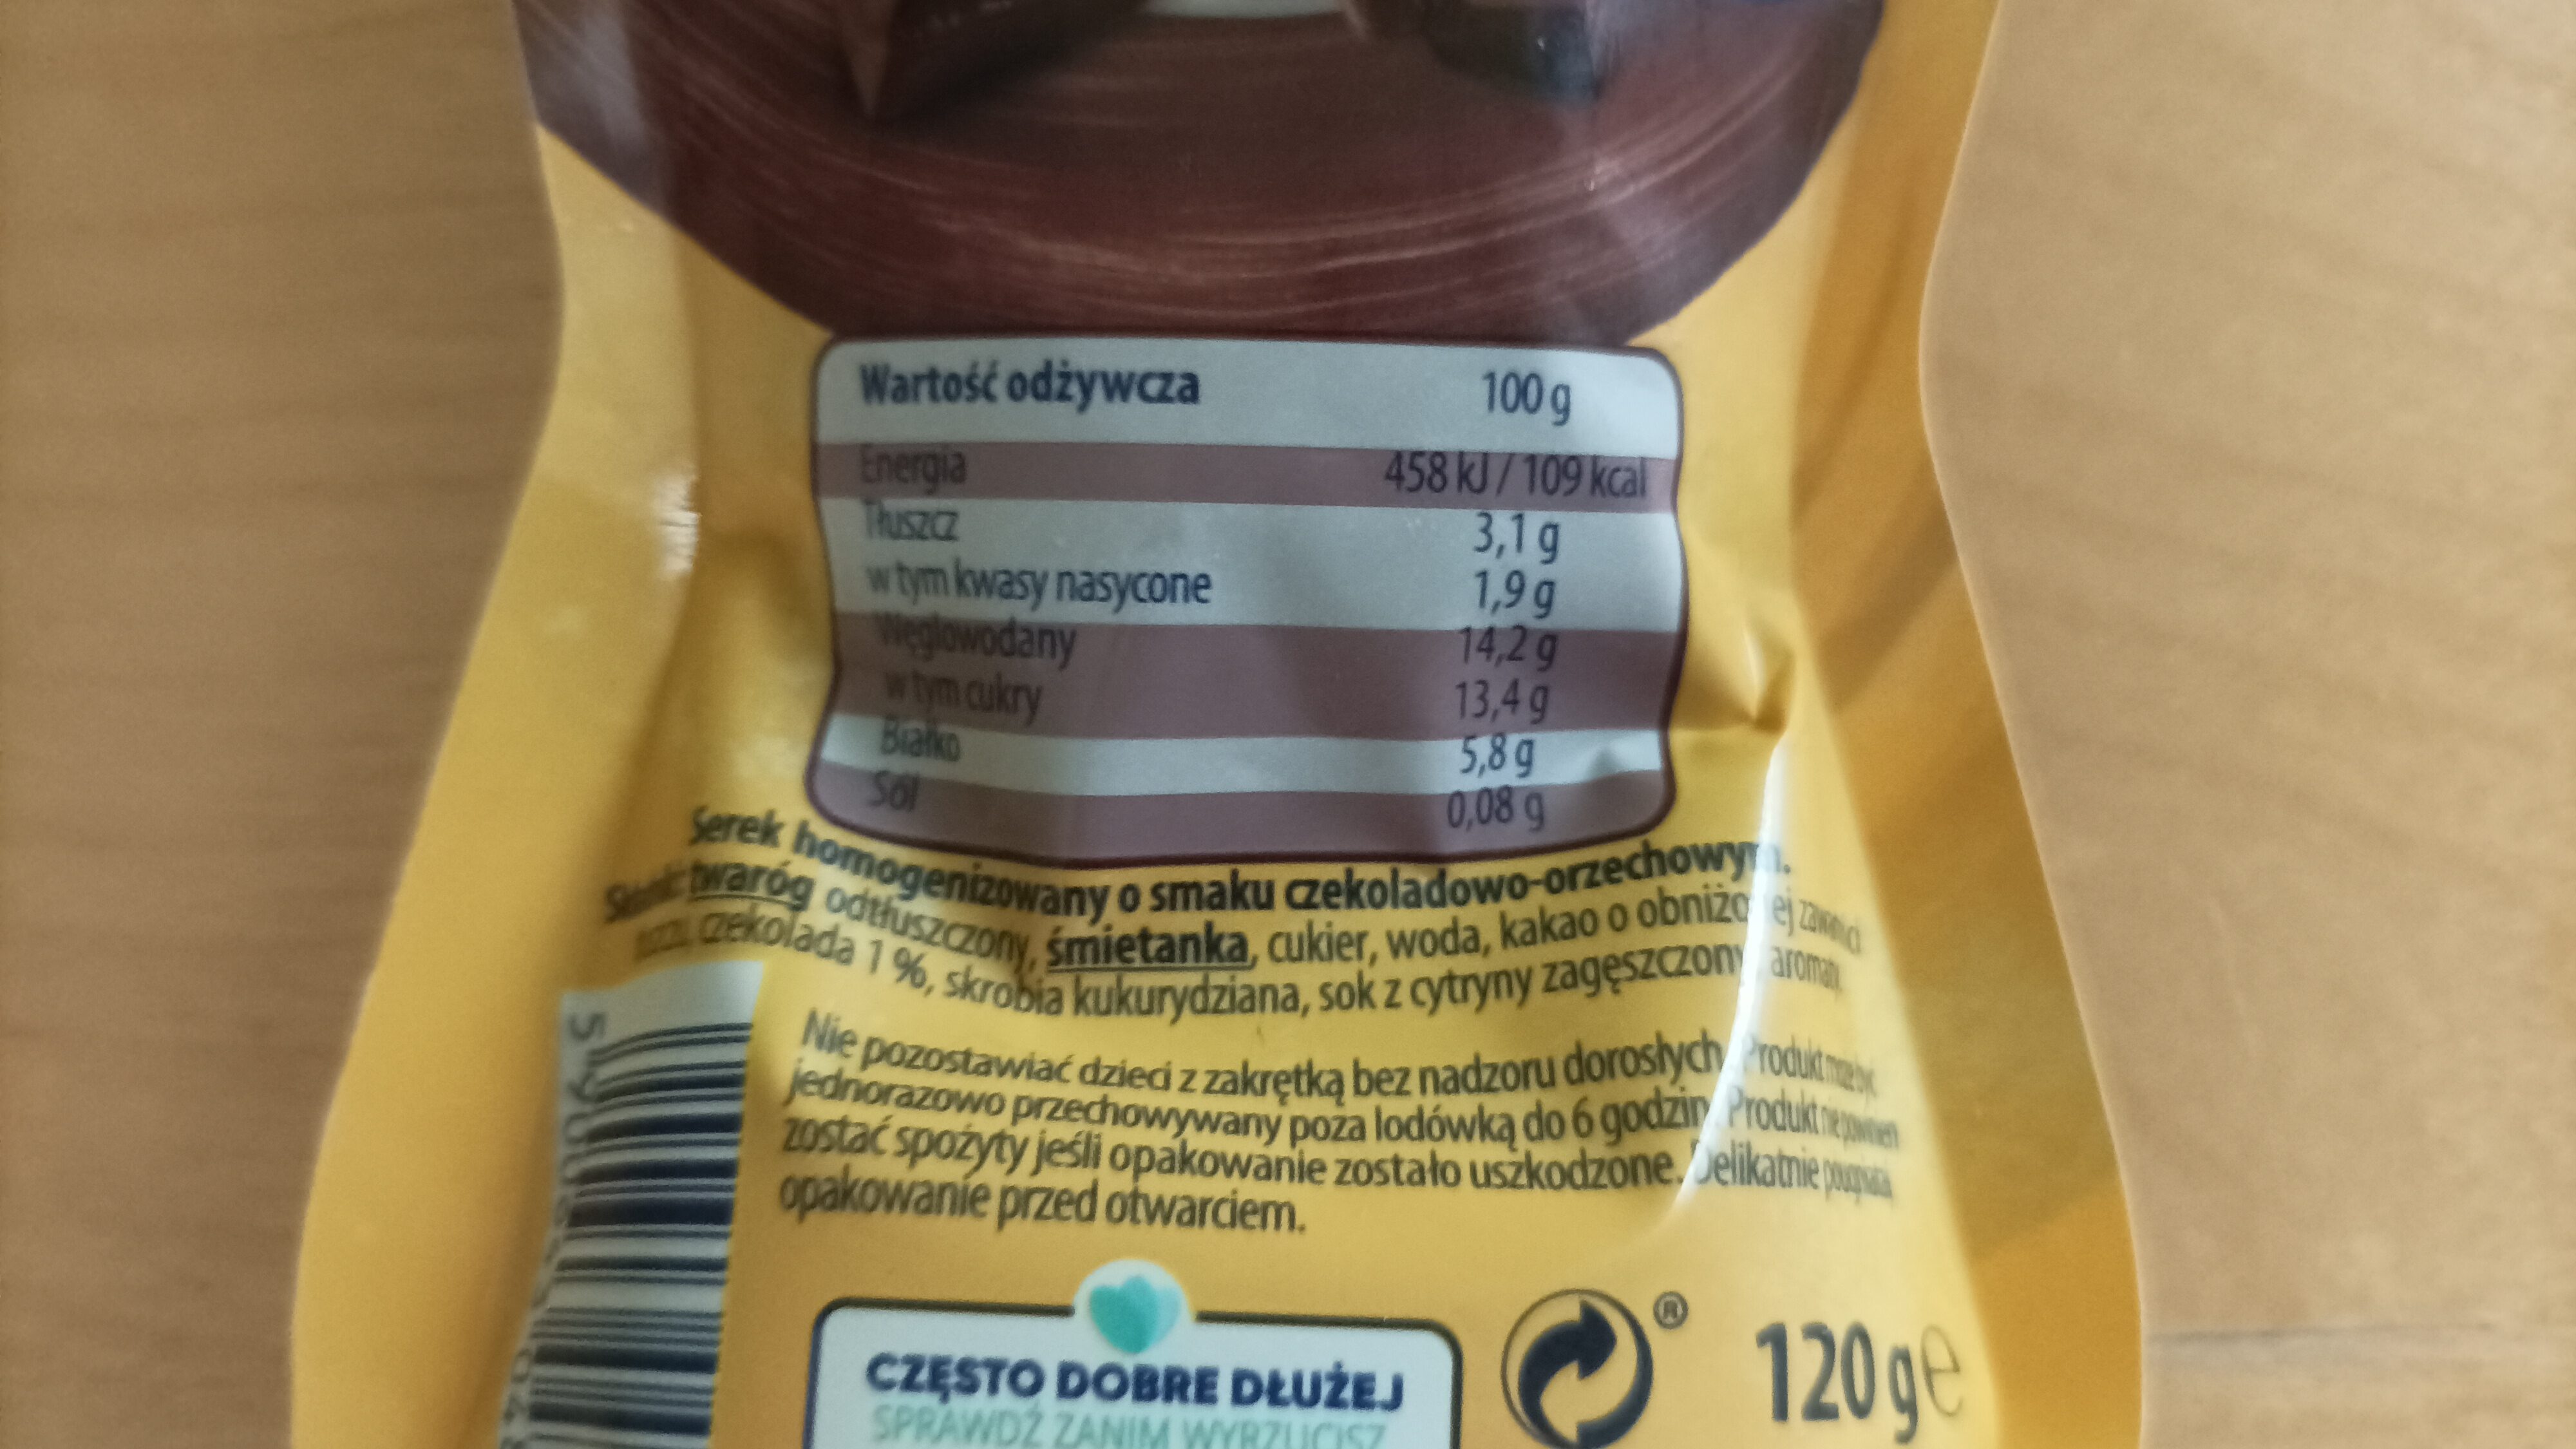 Danio o smaku czekoladowo-orzechowym - Nutrition facts - pl